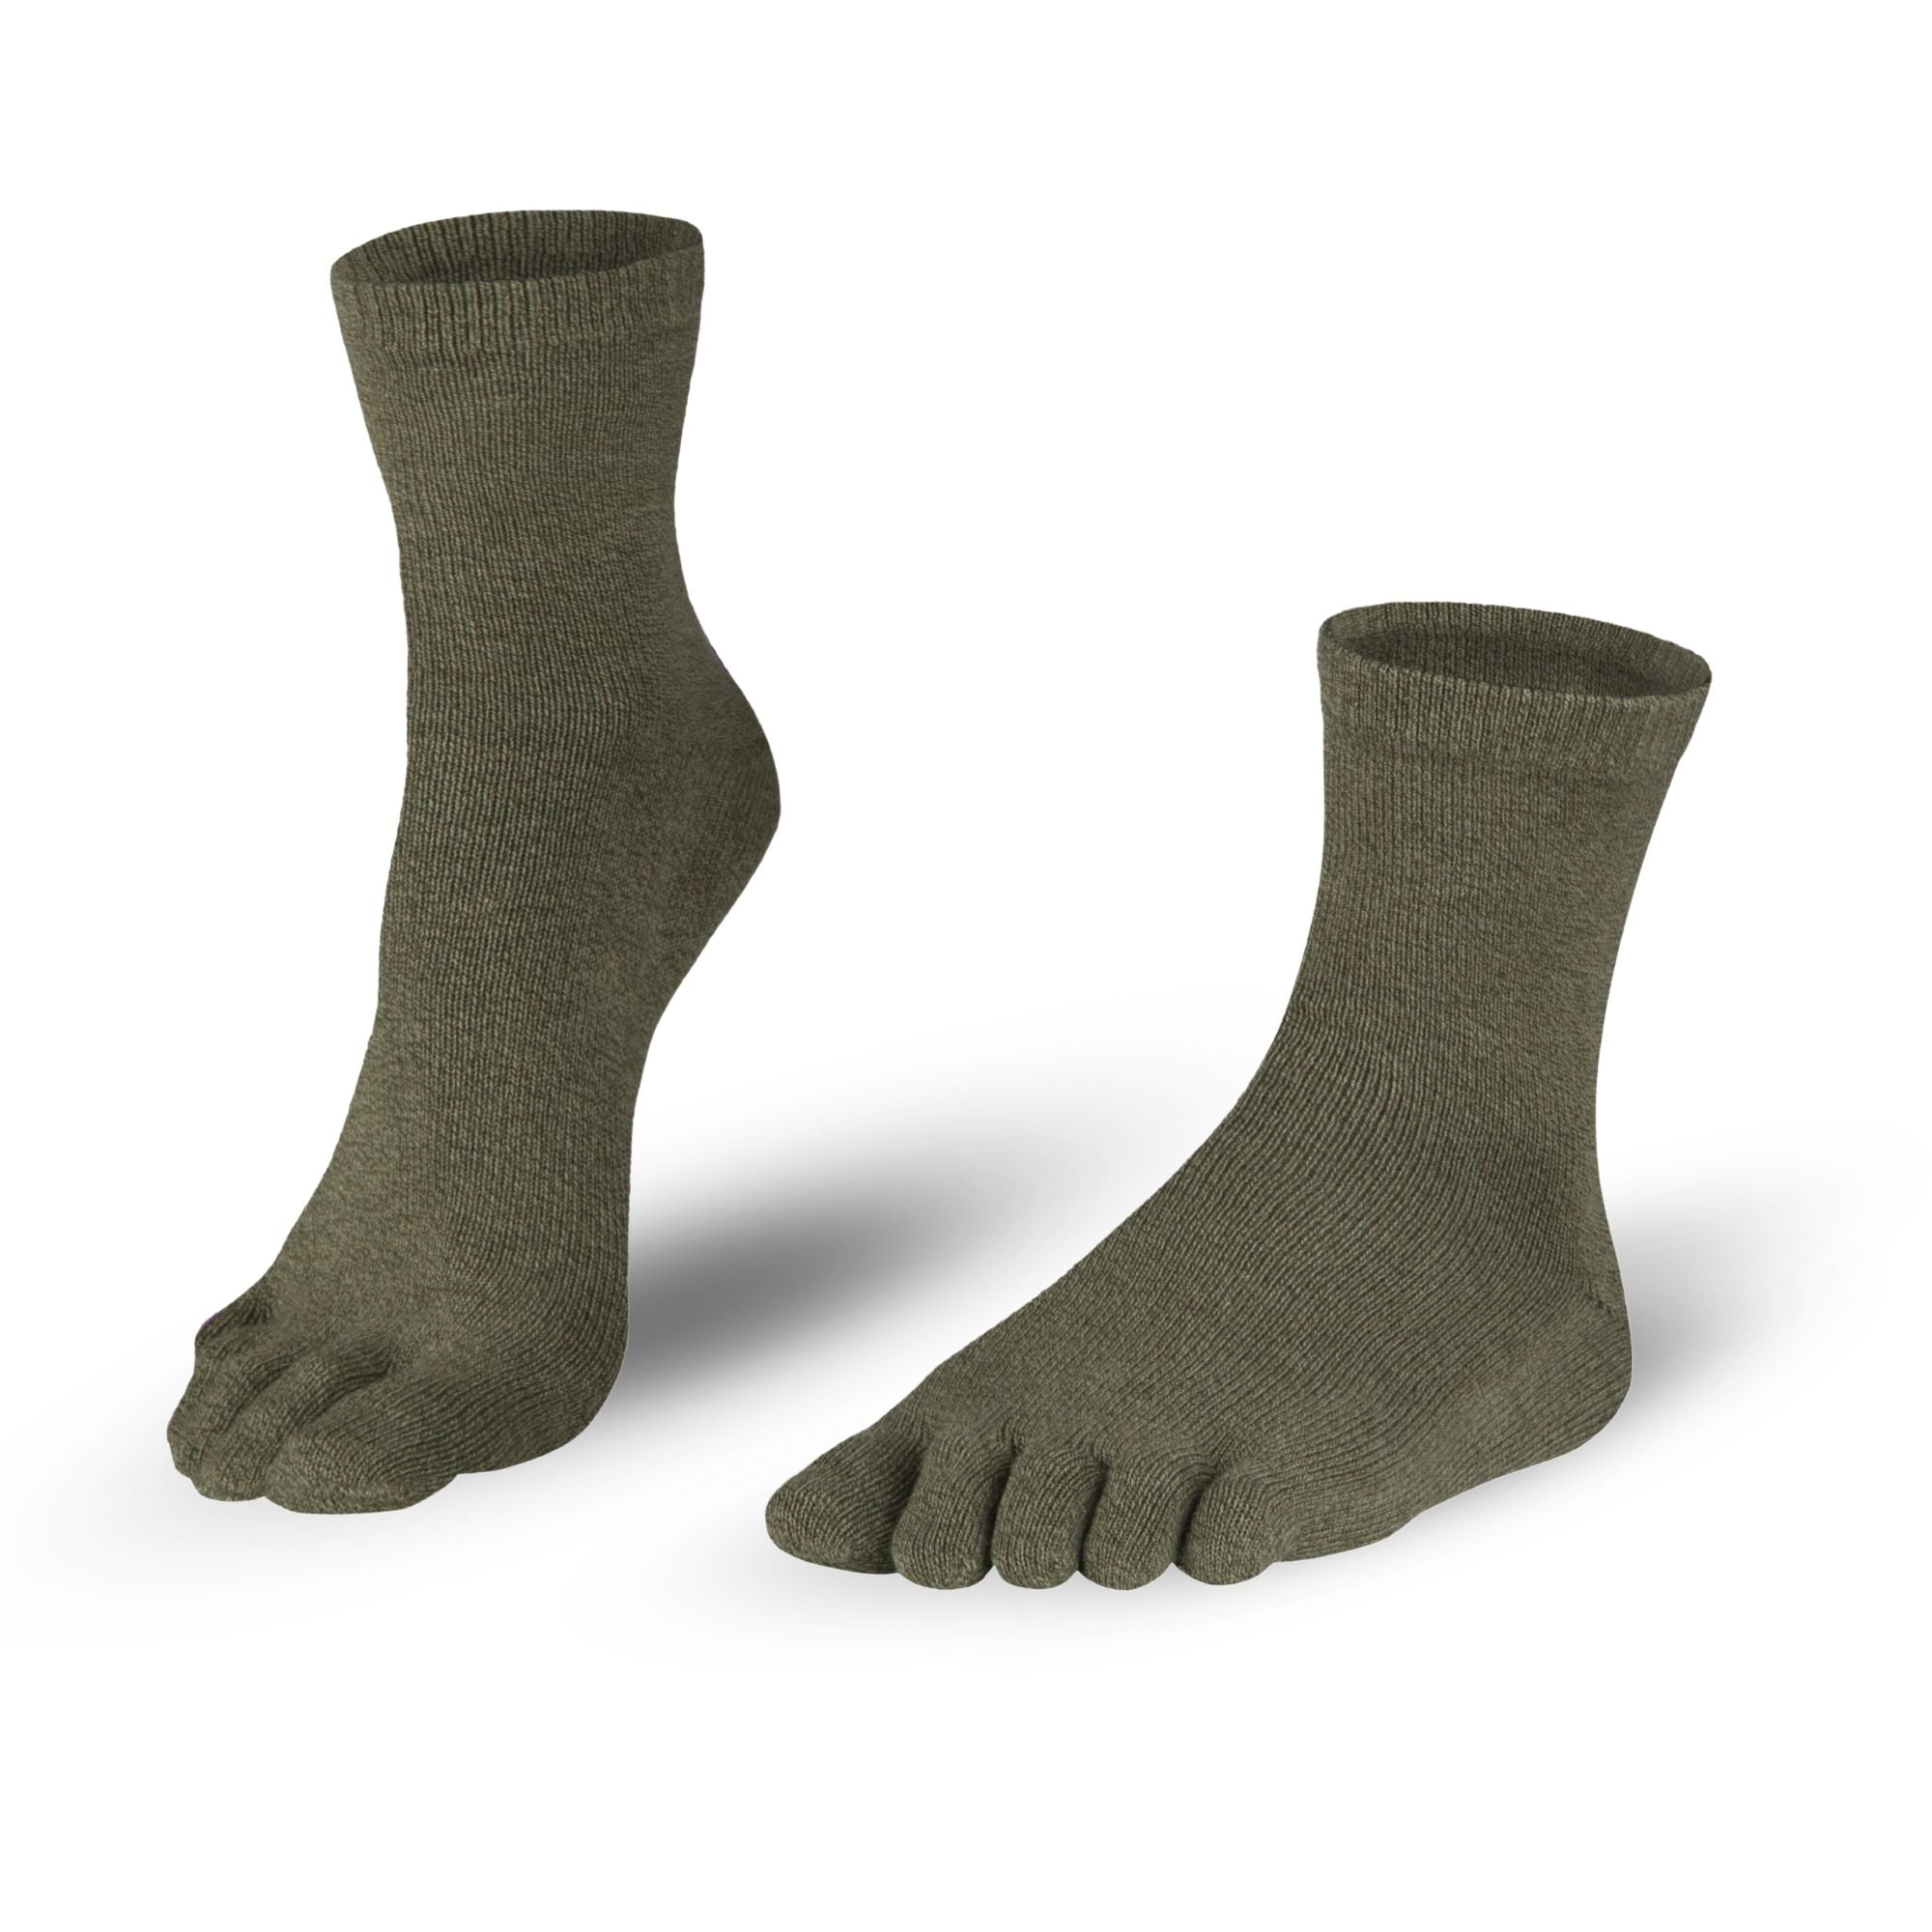 Bombažne nogavice za prste nogavic v sivo-zeleni barvi za dame in gospode